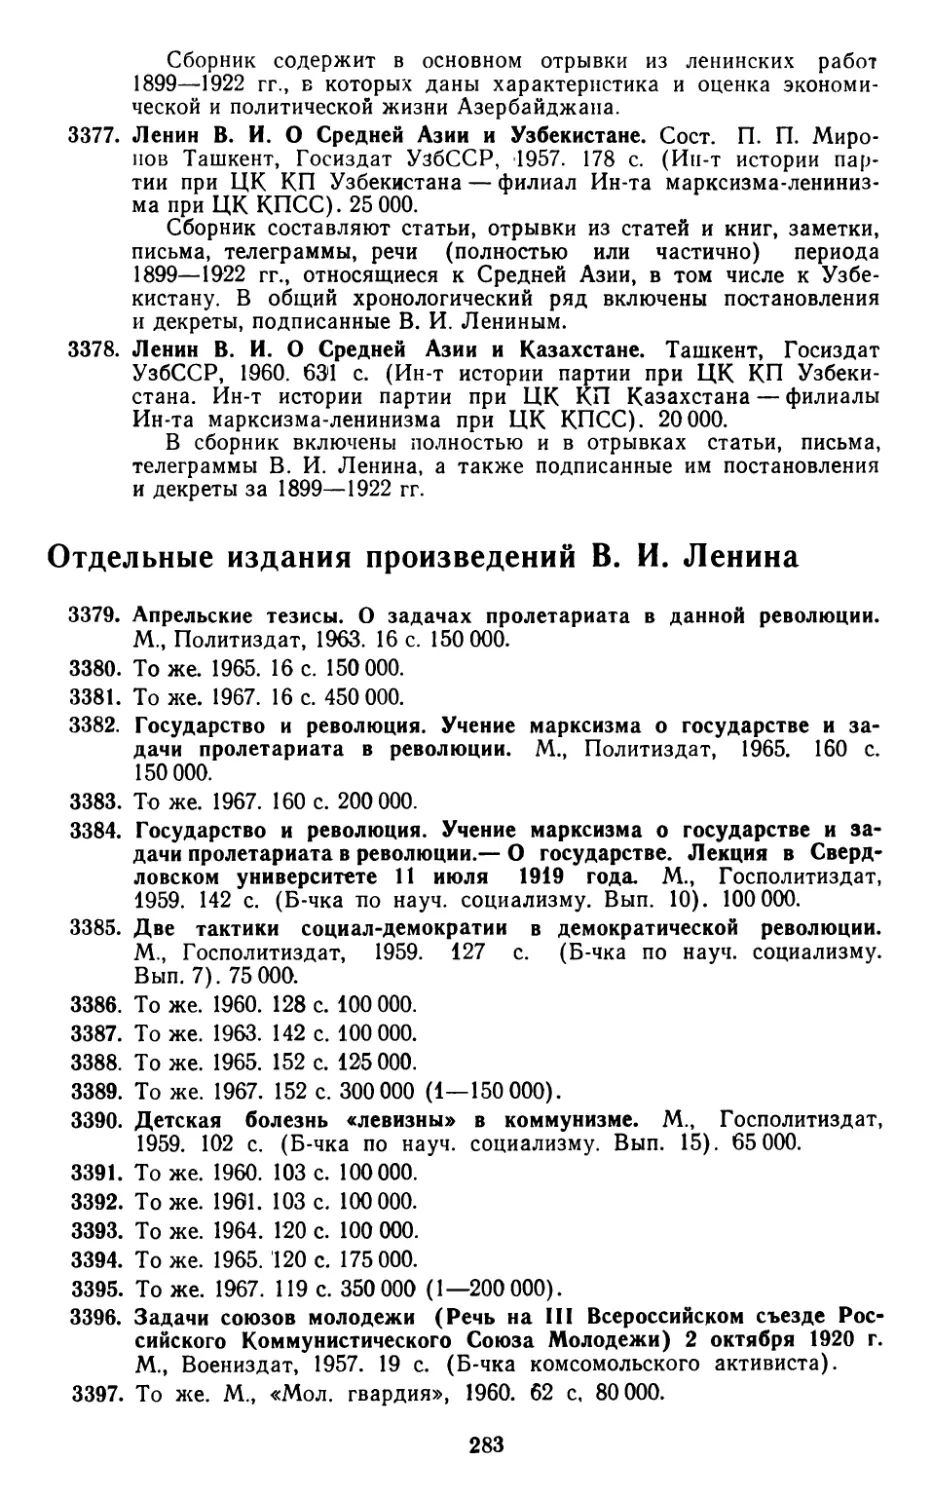 Отдельные издания произведений В. И. Ленина